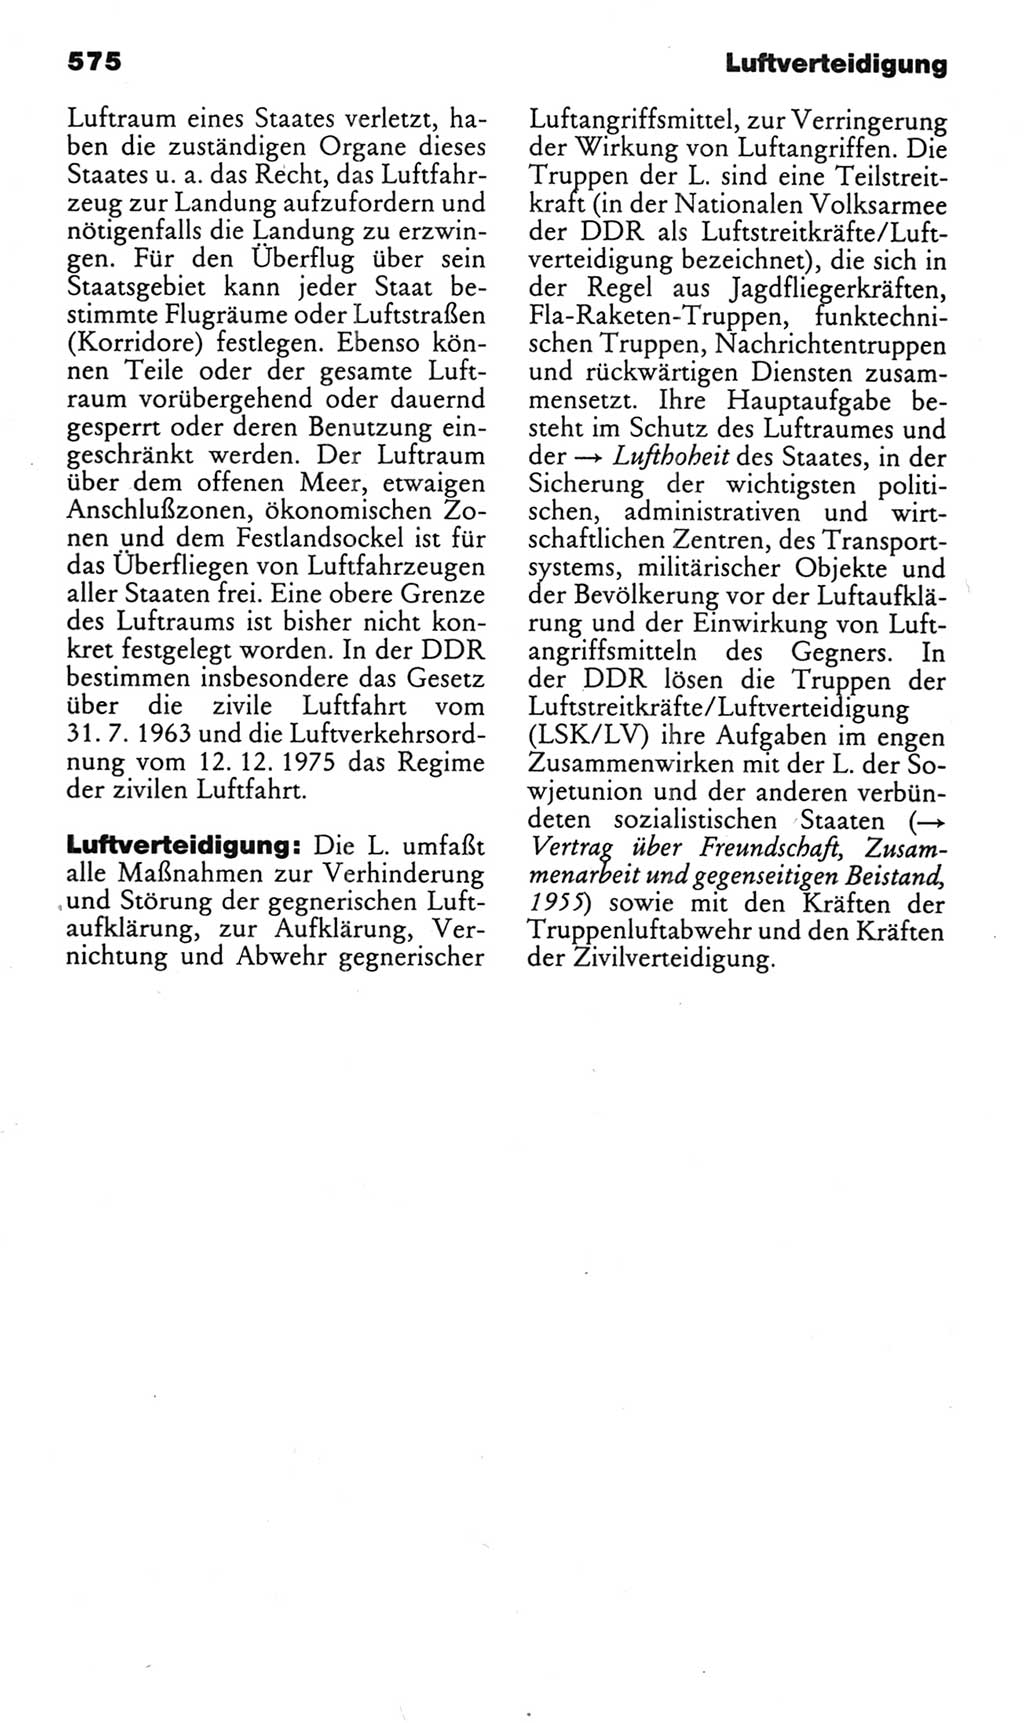 Kleines politisches Wörterbuch [Deutsche Demokratische Republik (DDR)] 1985, Seite 575 (Kl. pol. Wb. DDR 1985, S. 575)